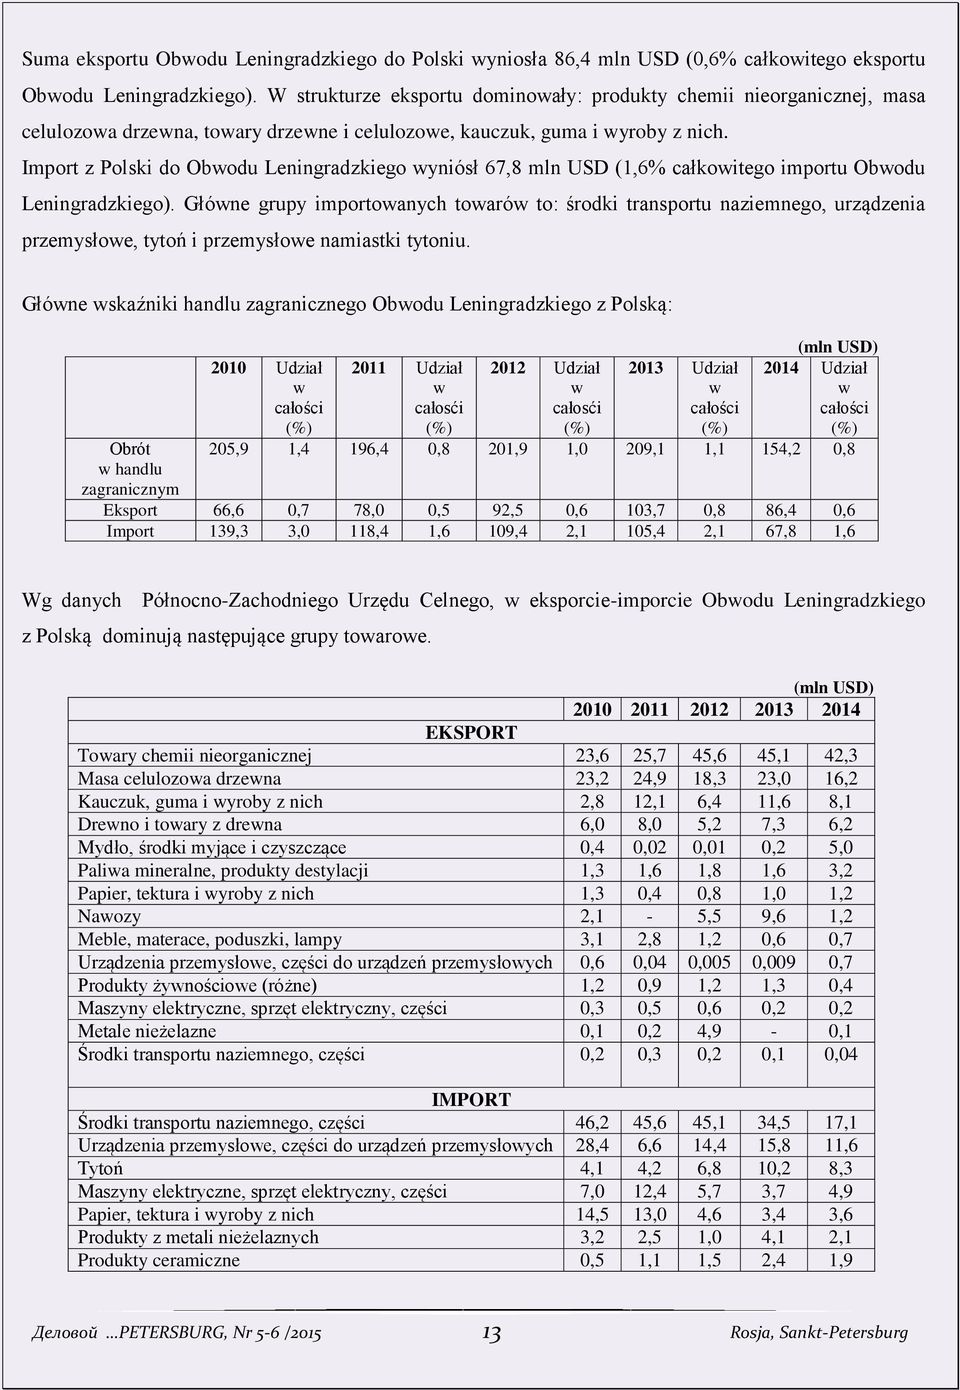 Import z Polski do Obwodu Leningradzkiego wyniósł 67,8 mln USD (1,6% całkowitego importu Obwodu Leningradzkiego).